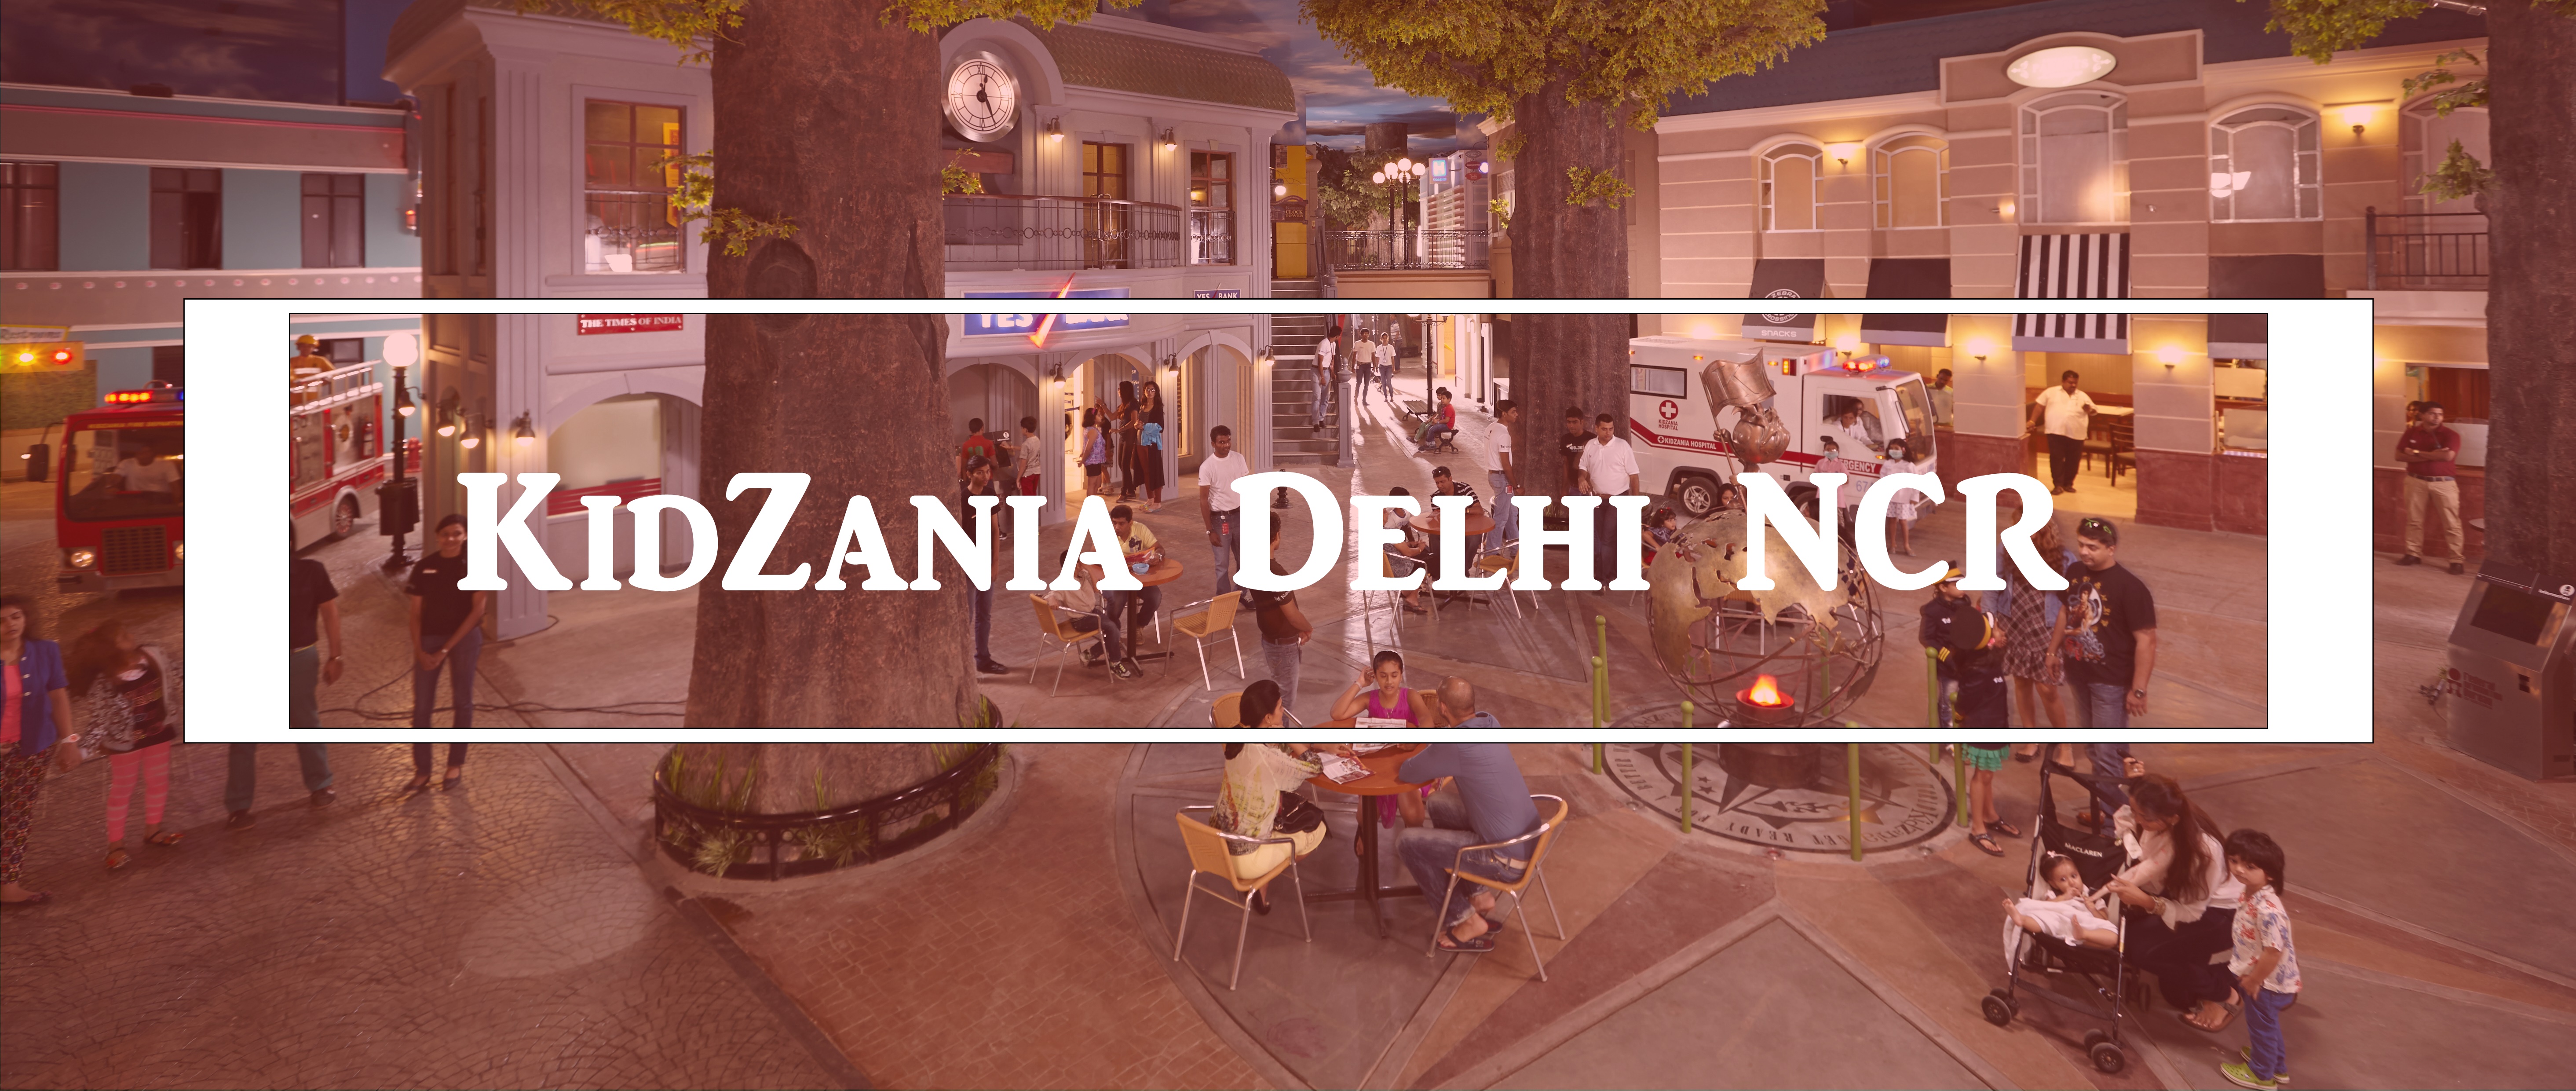 KidZania Delhi NCR Events Activties in Noida